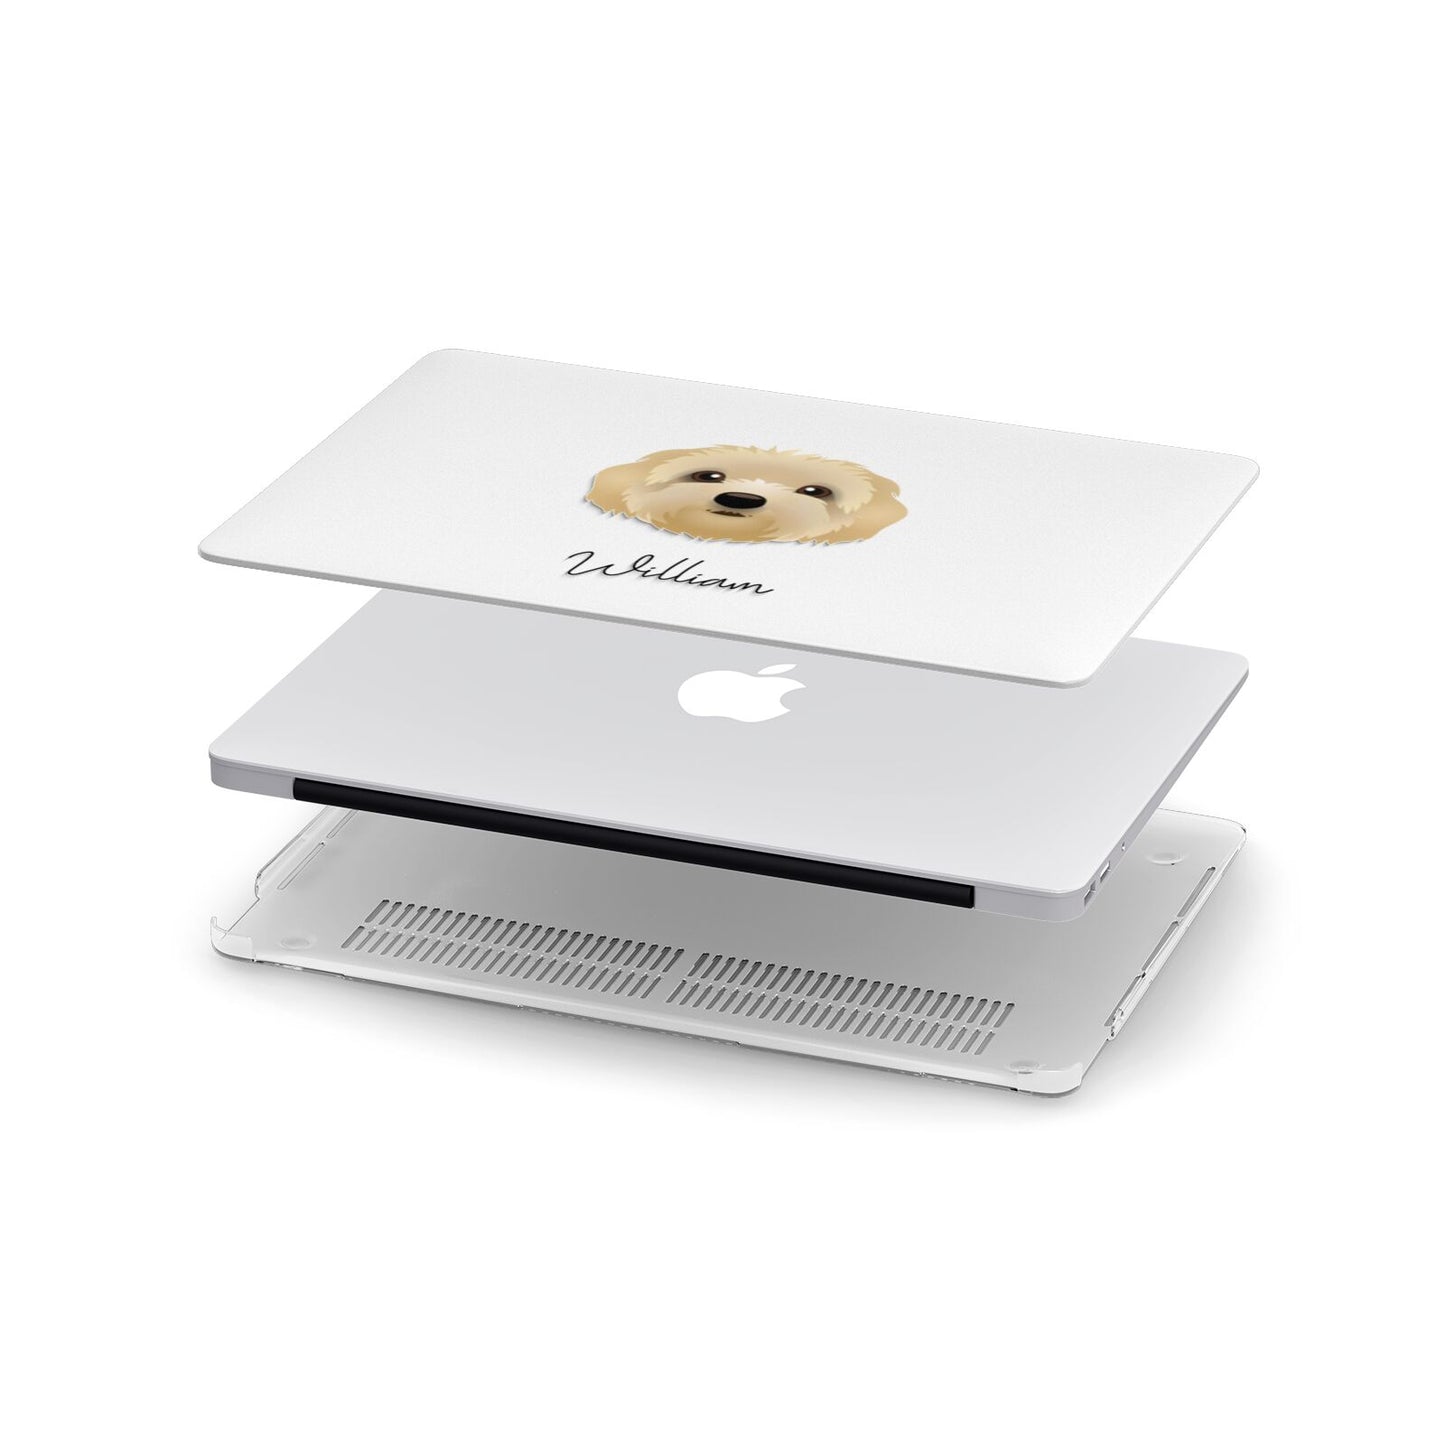 Terri Poo Personalised Apple MacBook Case in Detail